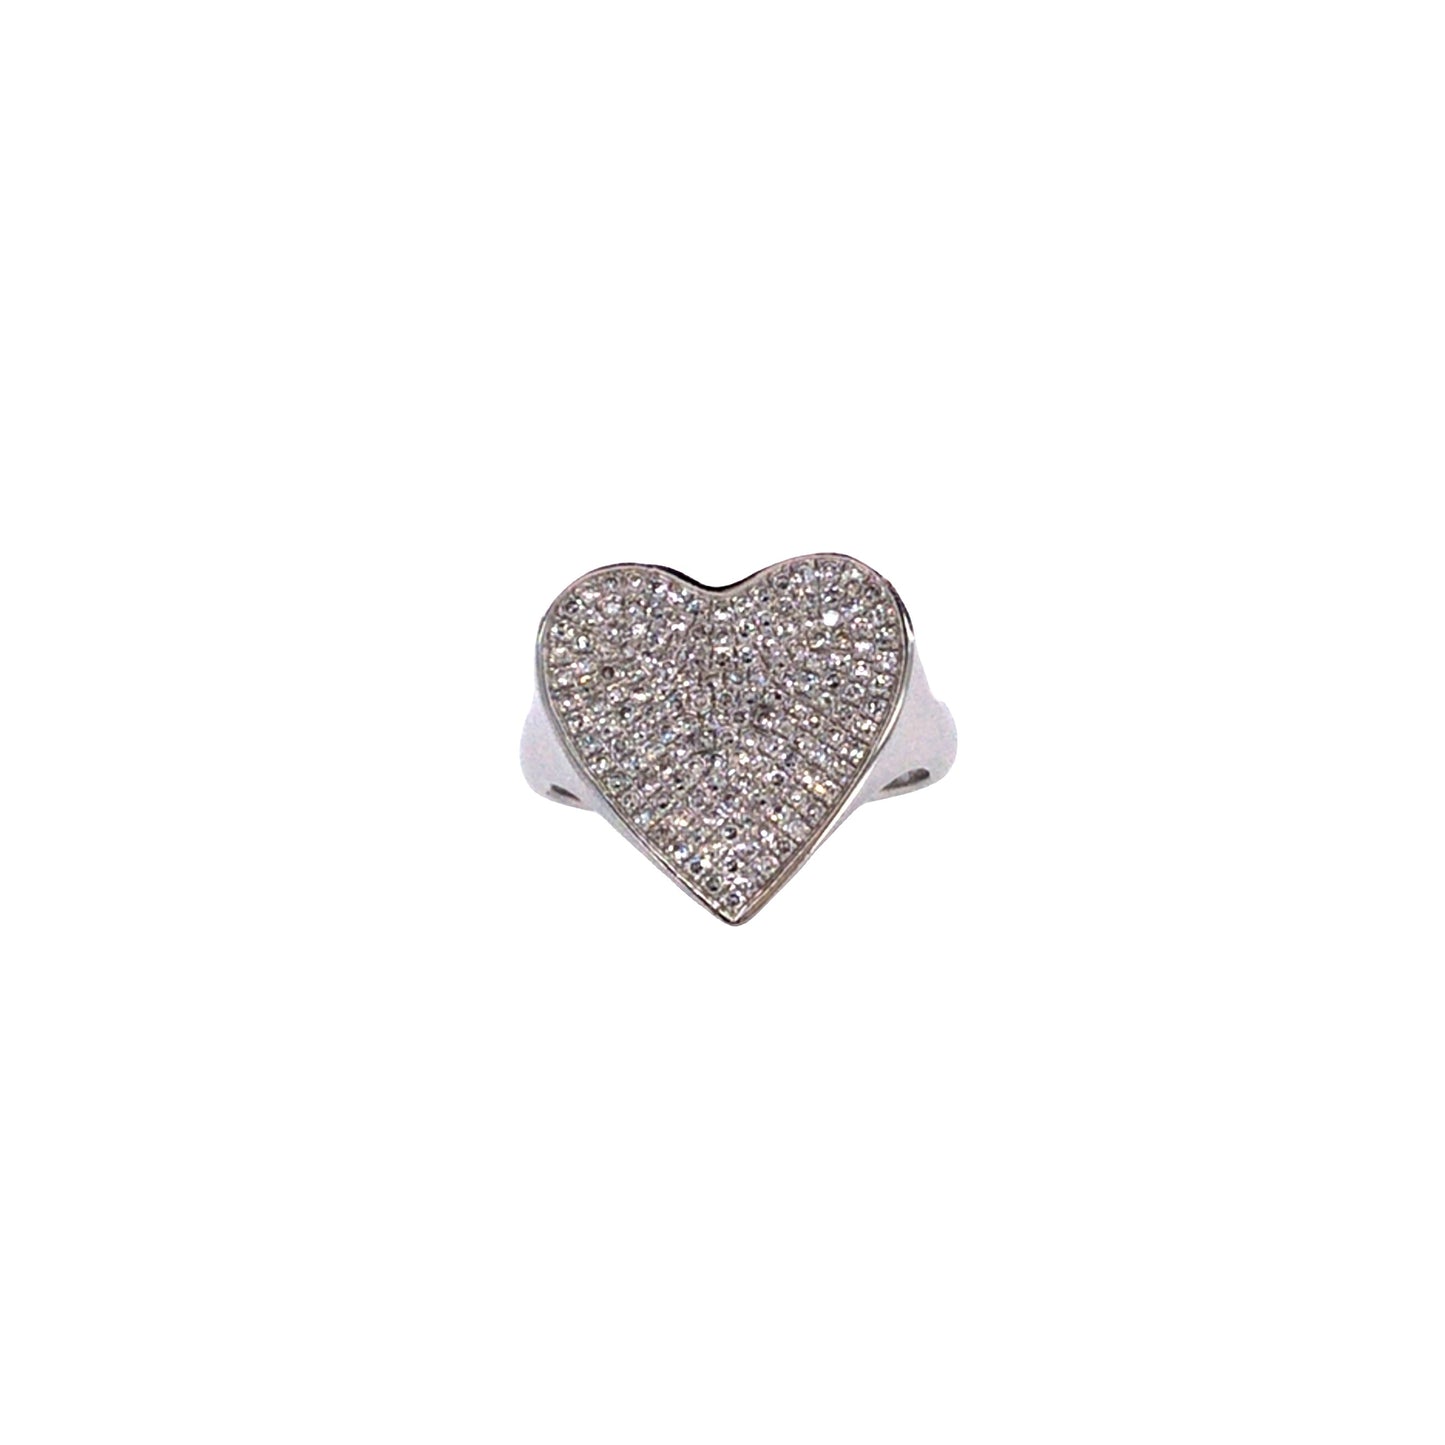 White Gold & Diamond Heart Ring